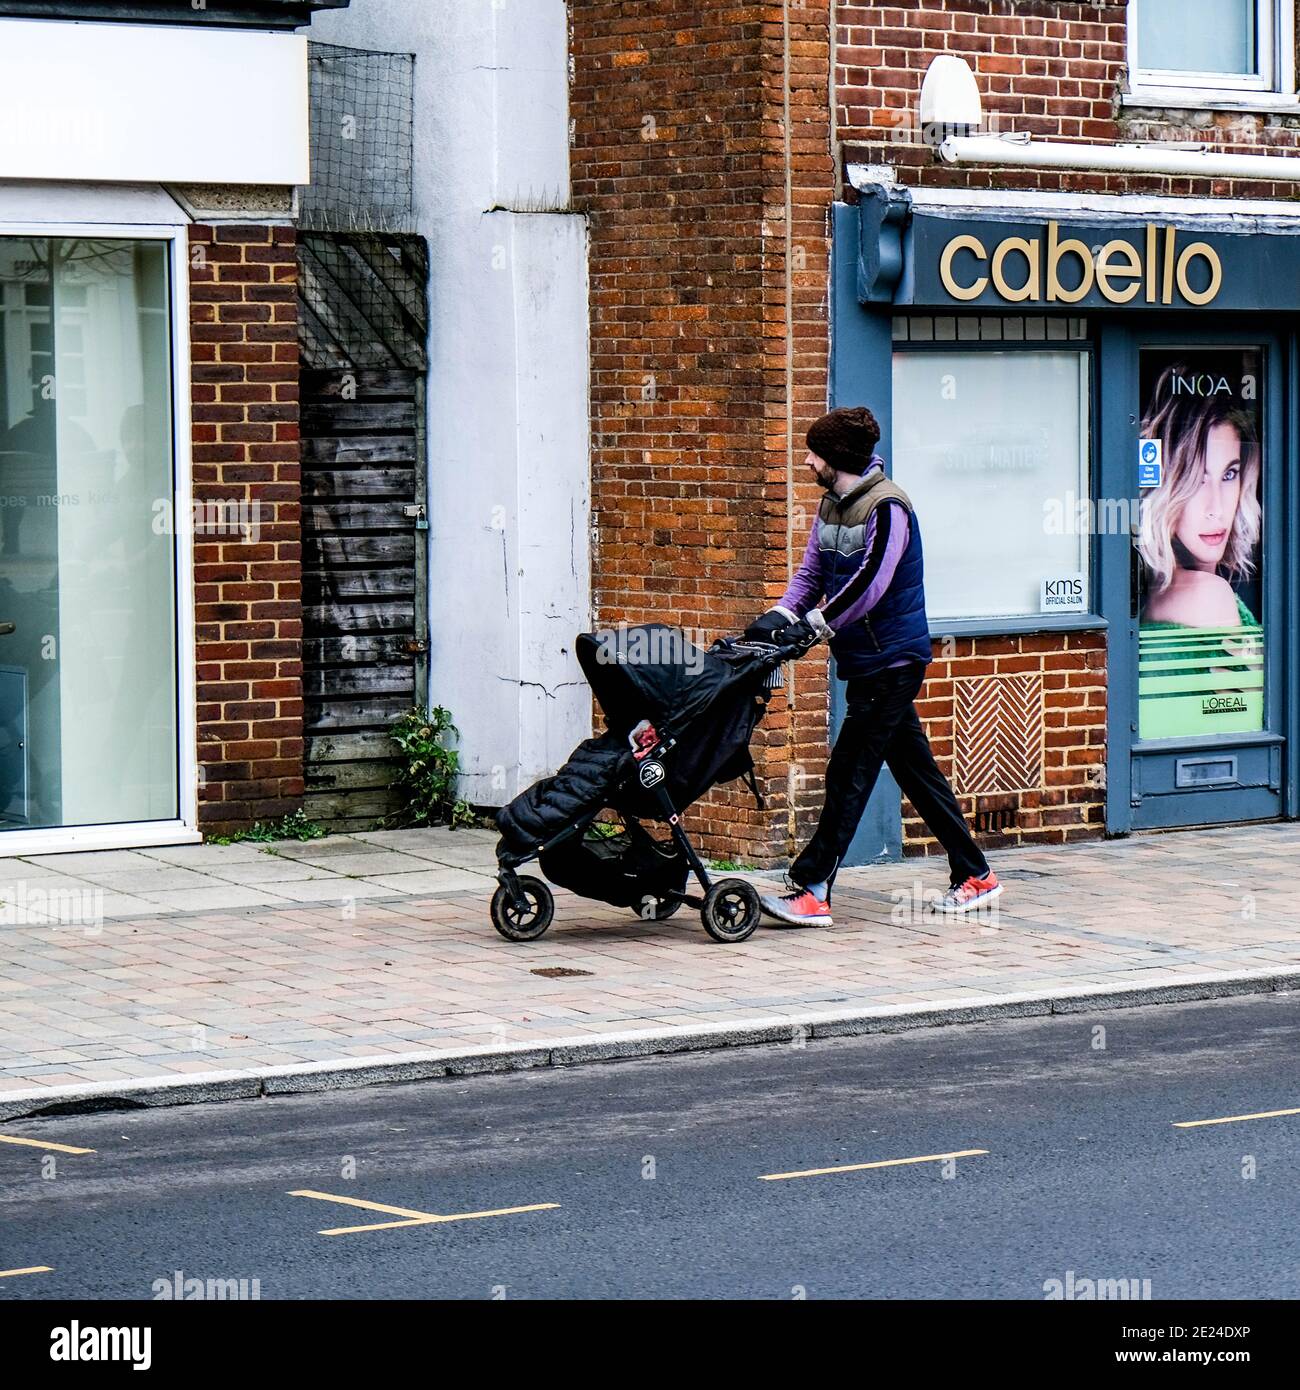 Londra UK, Young Man o Padre da solo spingendo UN bambino o un bambino in UN passeggino lungo una High Street vuota durante il Covid-19 Pandemic Lockdown Foto Stock